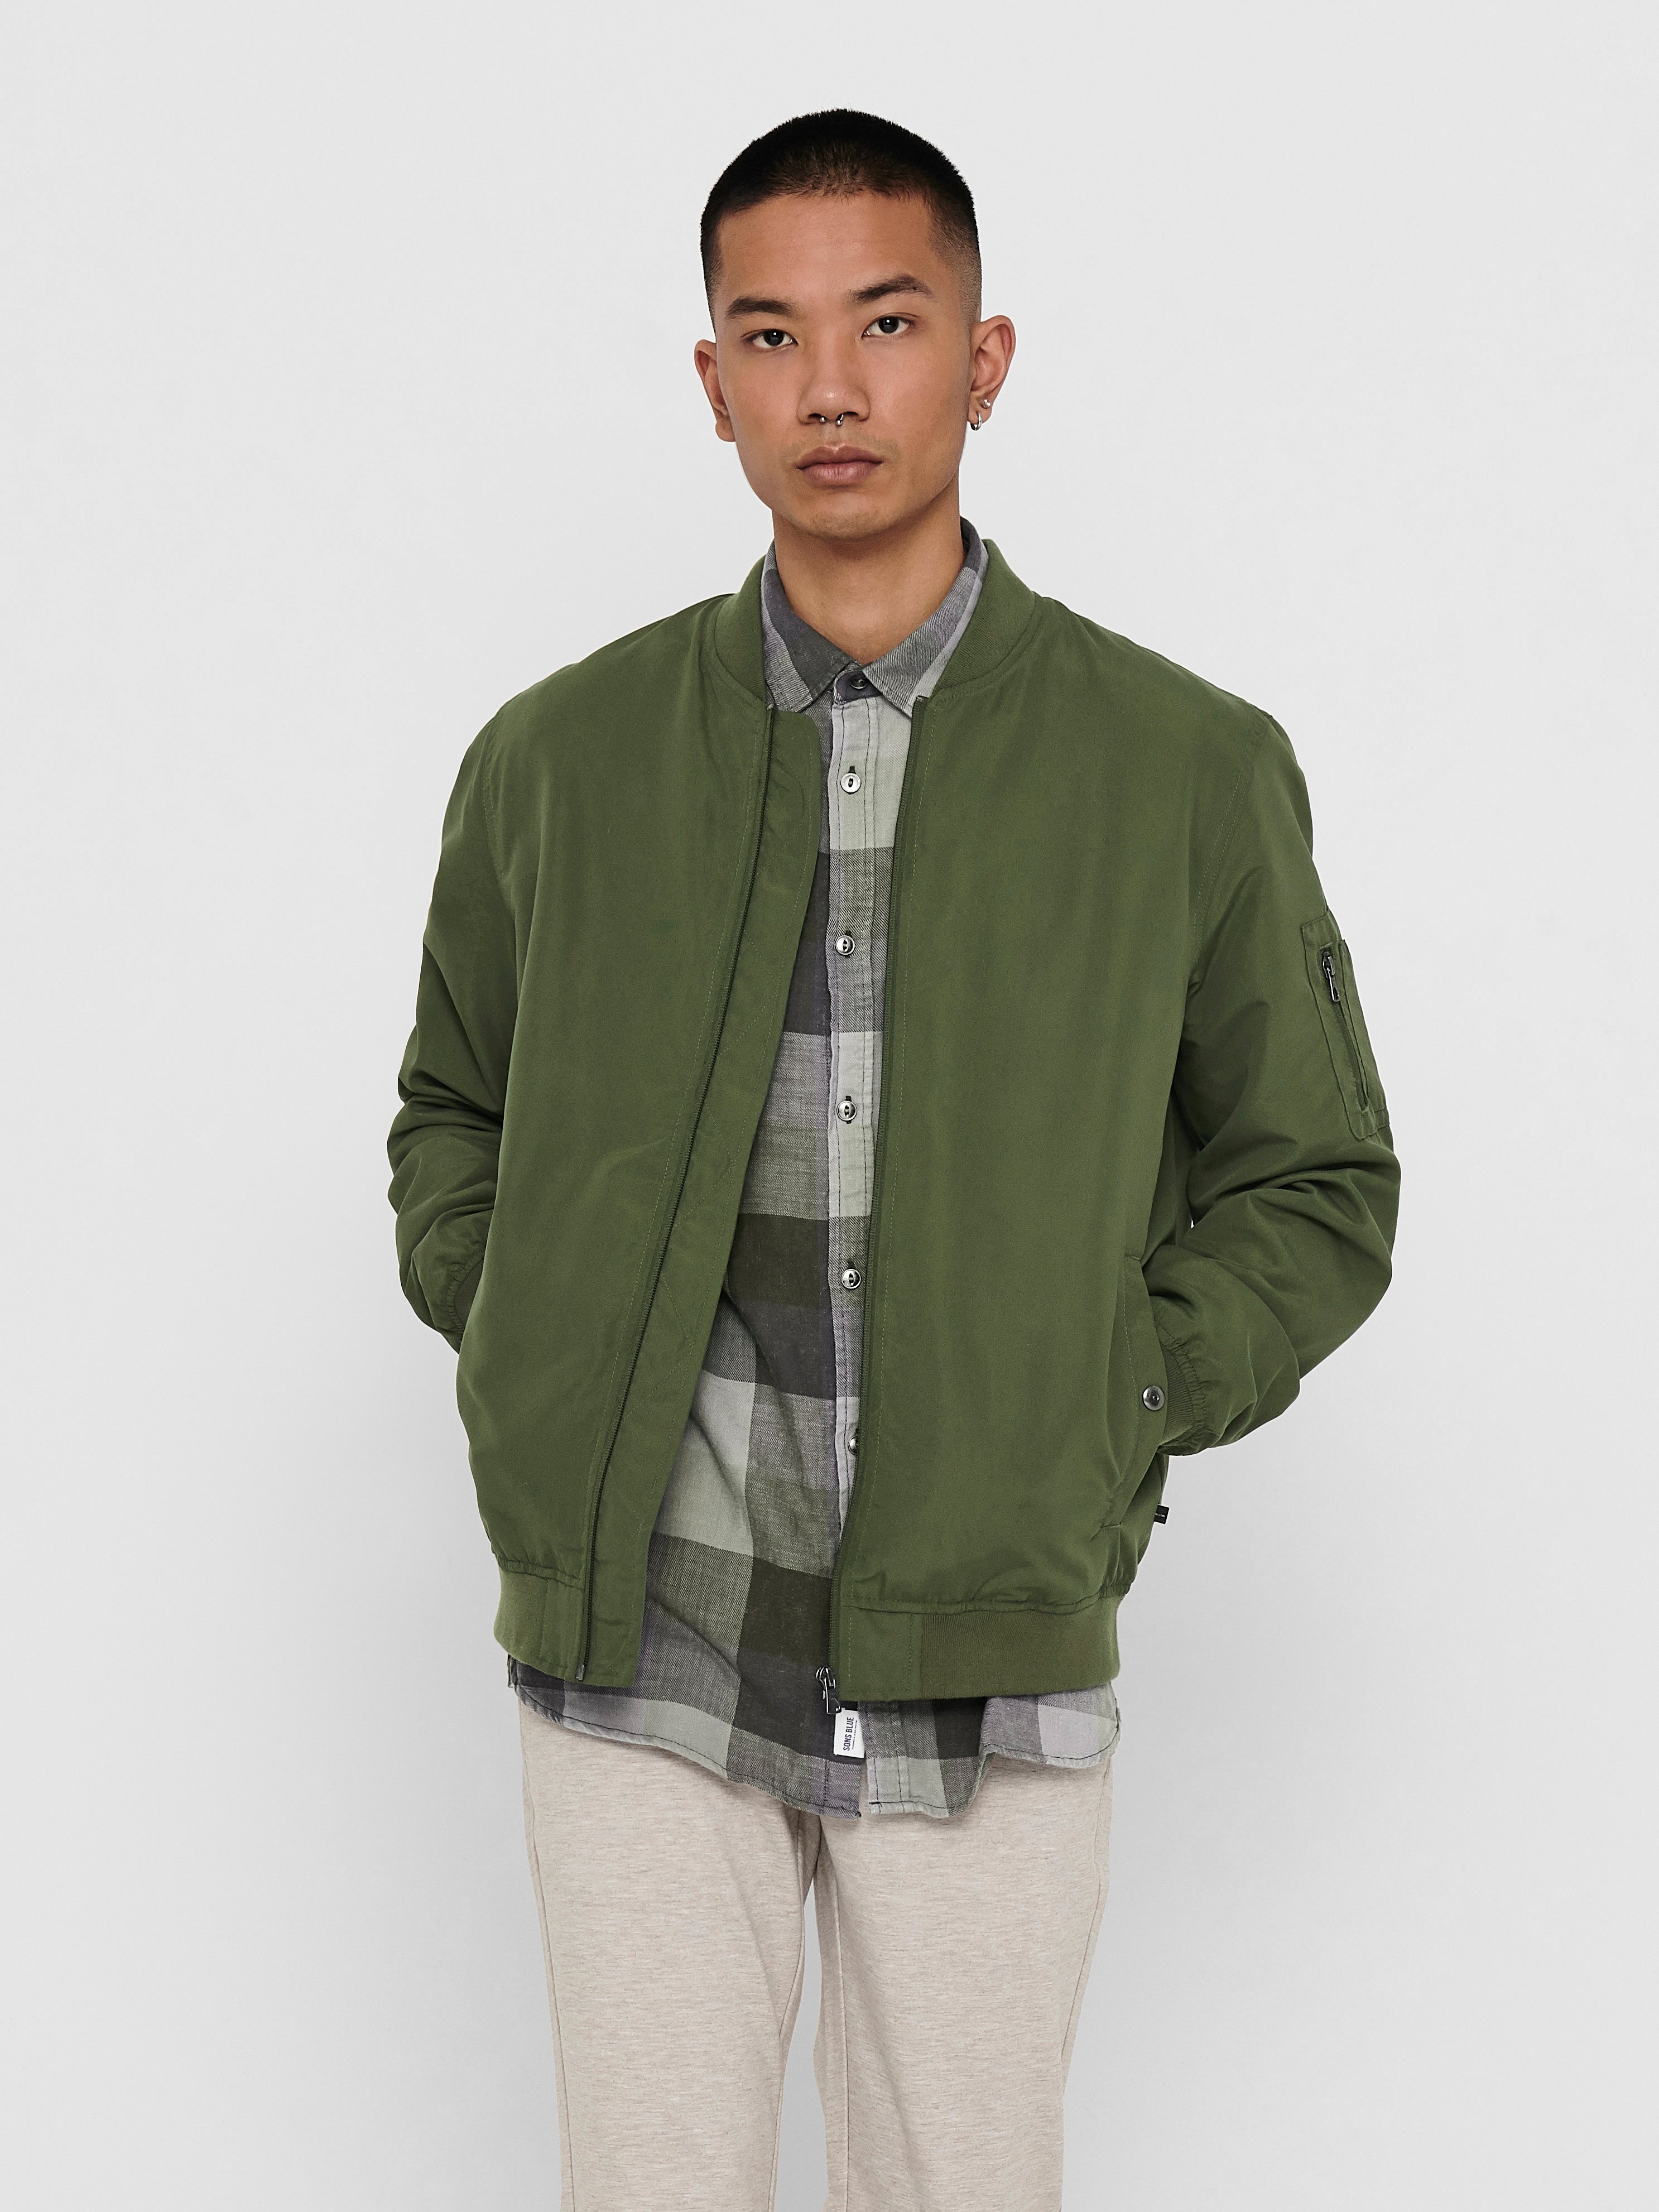 Ensfarvet jakke Mørkegrøn | ONLY & SONS®